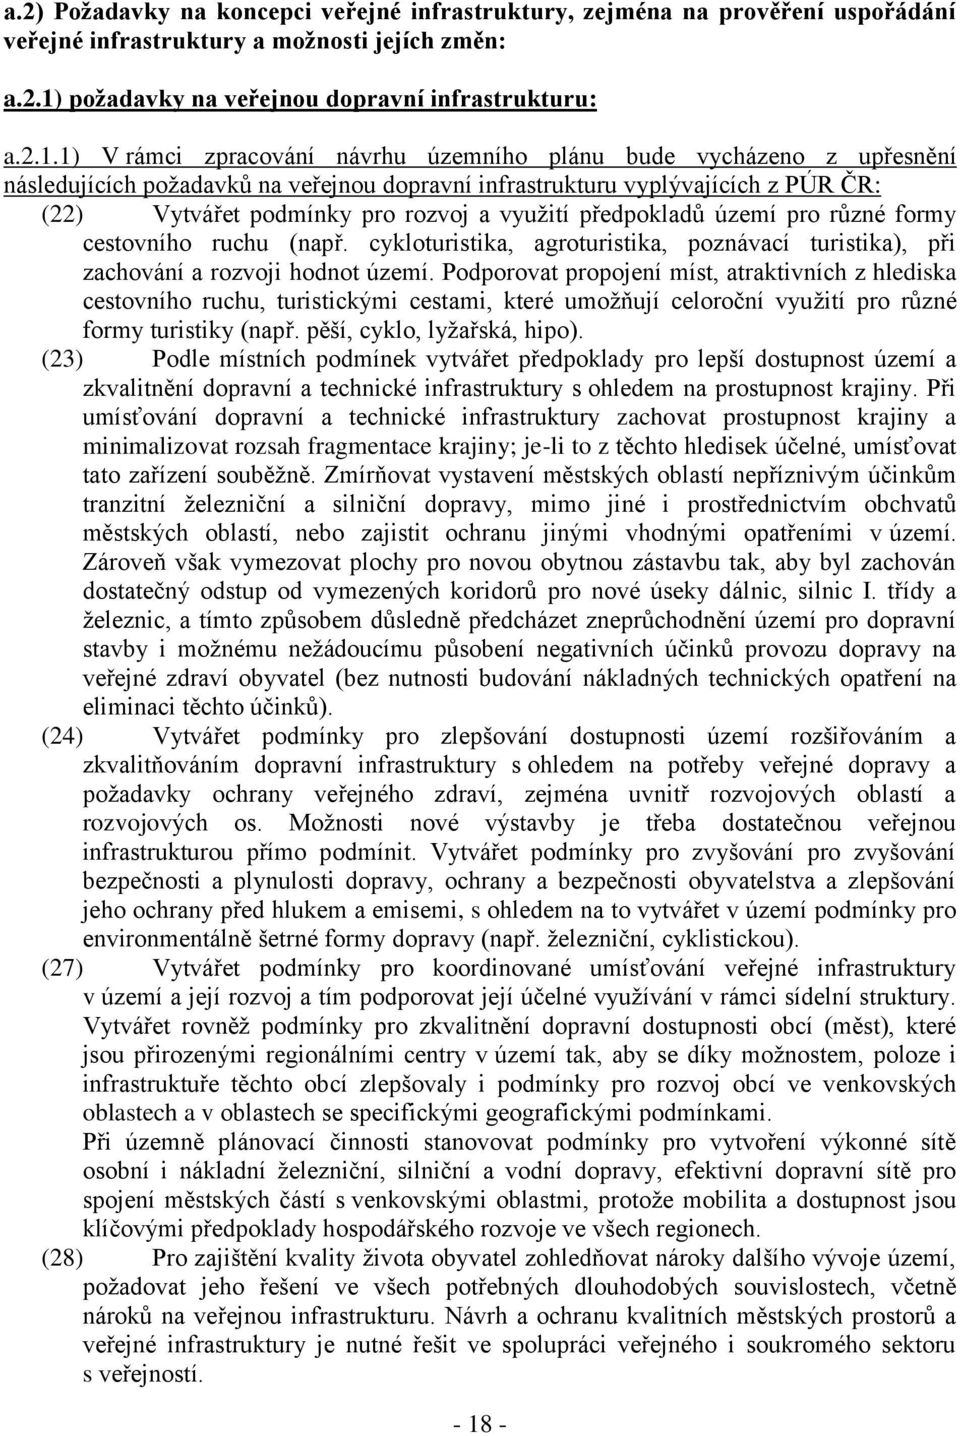 1) V rámci zpracování návrhu územního plánu bude vycházeno z upřesnění následujících požadavků na veřejnou dopravní infrastrukturu vyplývajících z PÚR ČR: (22) Vytvářet podmínky pro rozvoj a využití